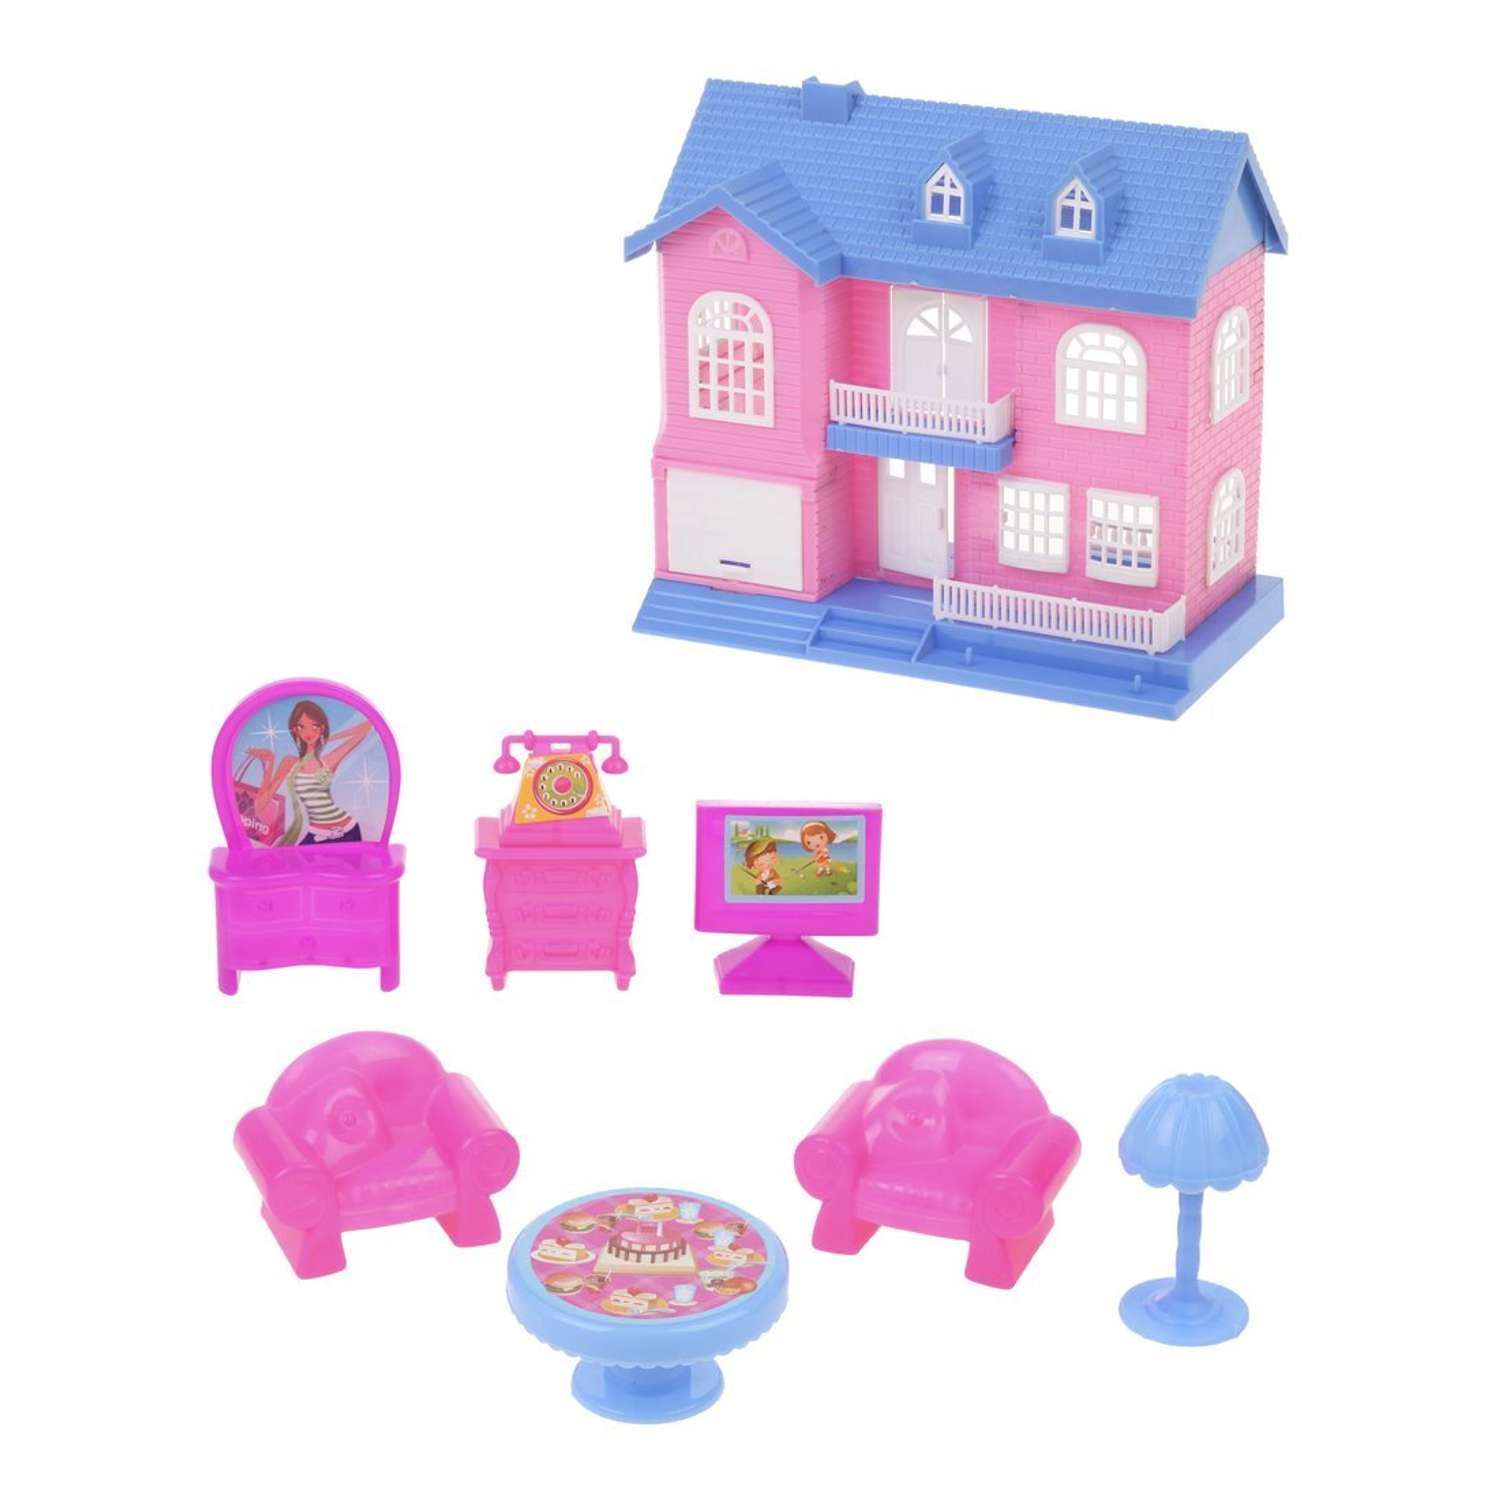 Кукольный домик Наша Игрушка игровой набор 7 предметов 802215 - фото 1